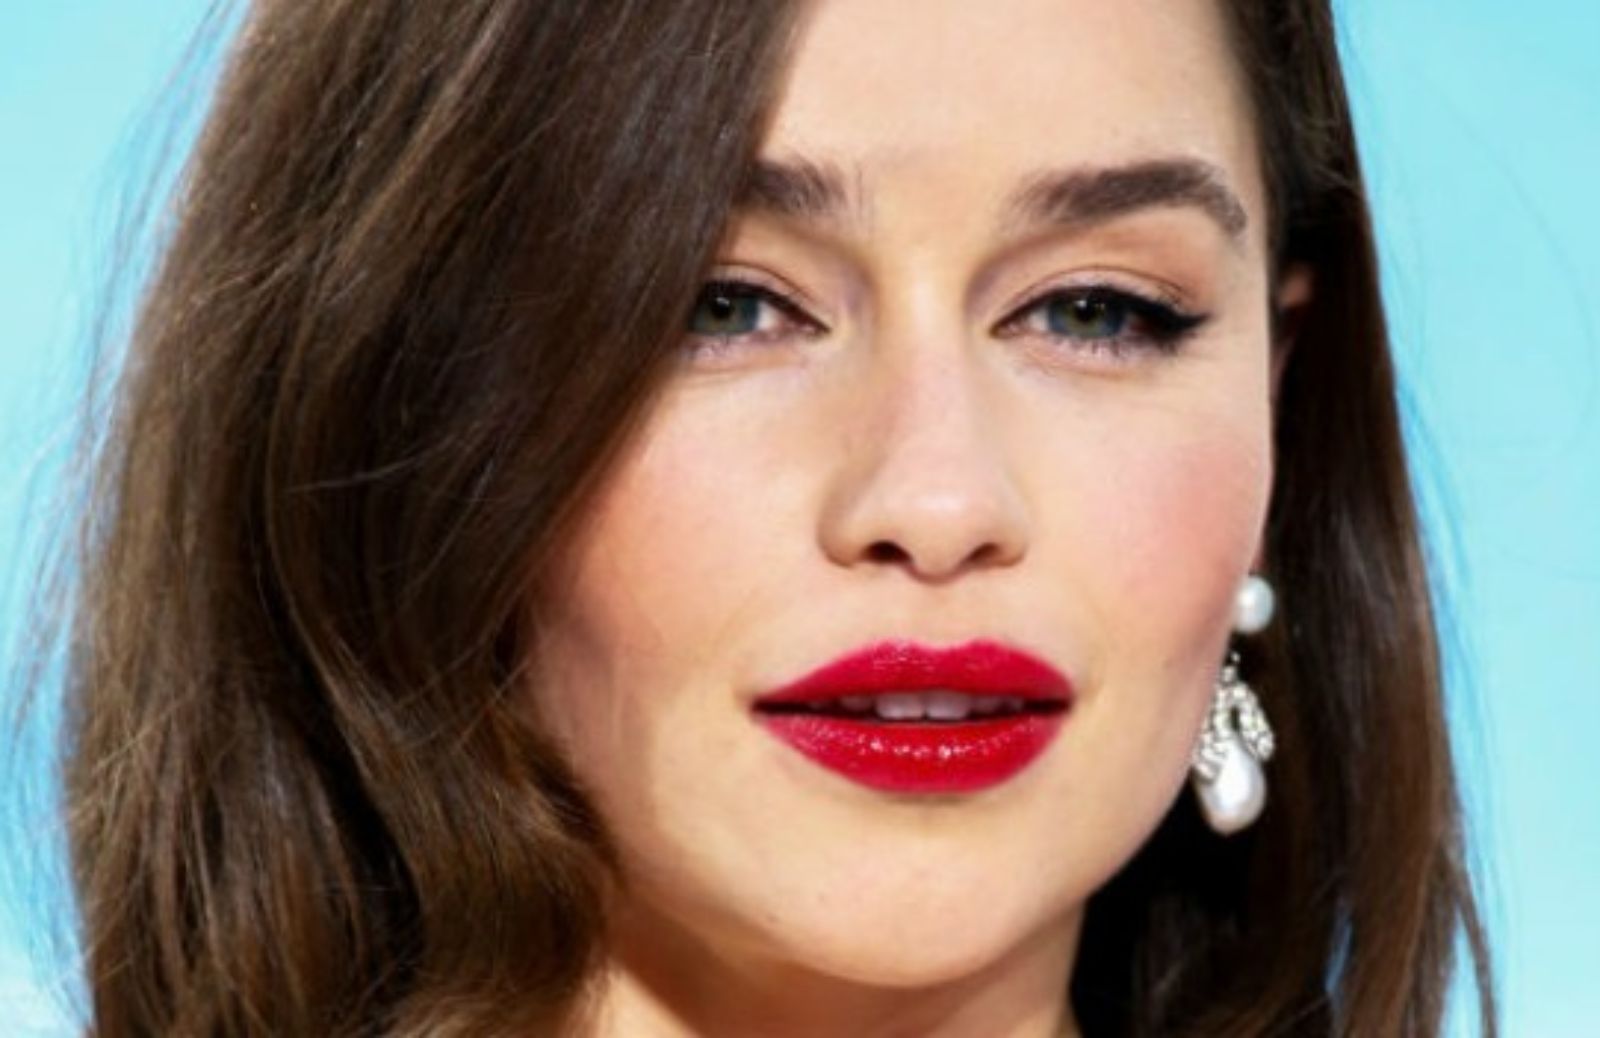 Emilia Clarke: passione rossetto - Tutte le nuances usate dall'attrice